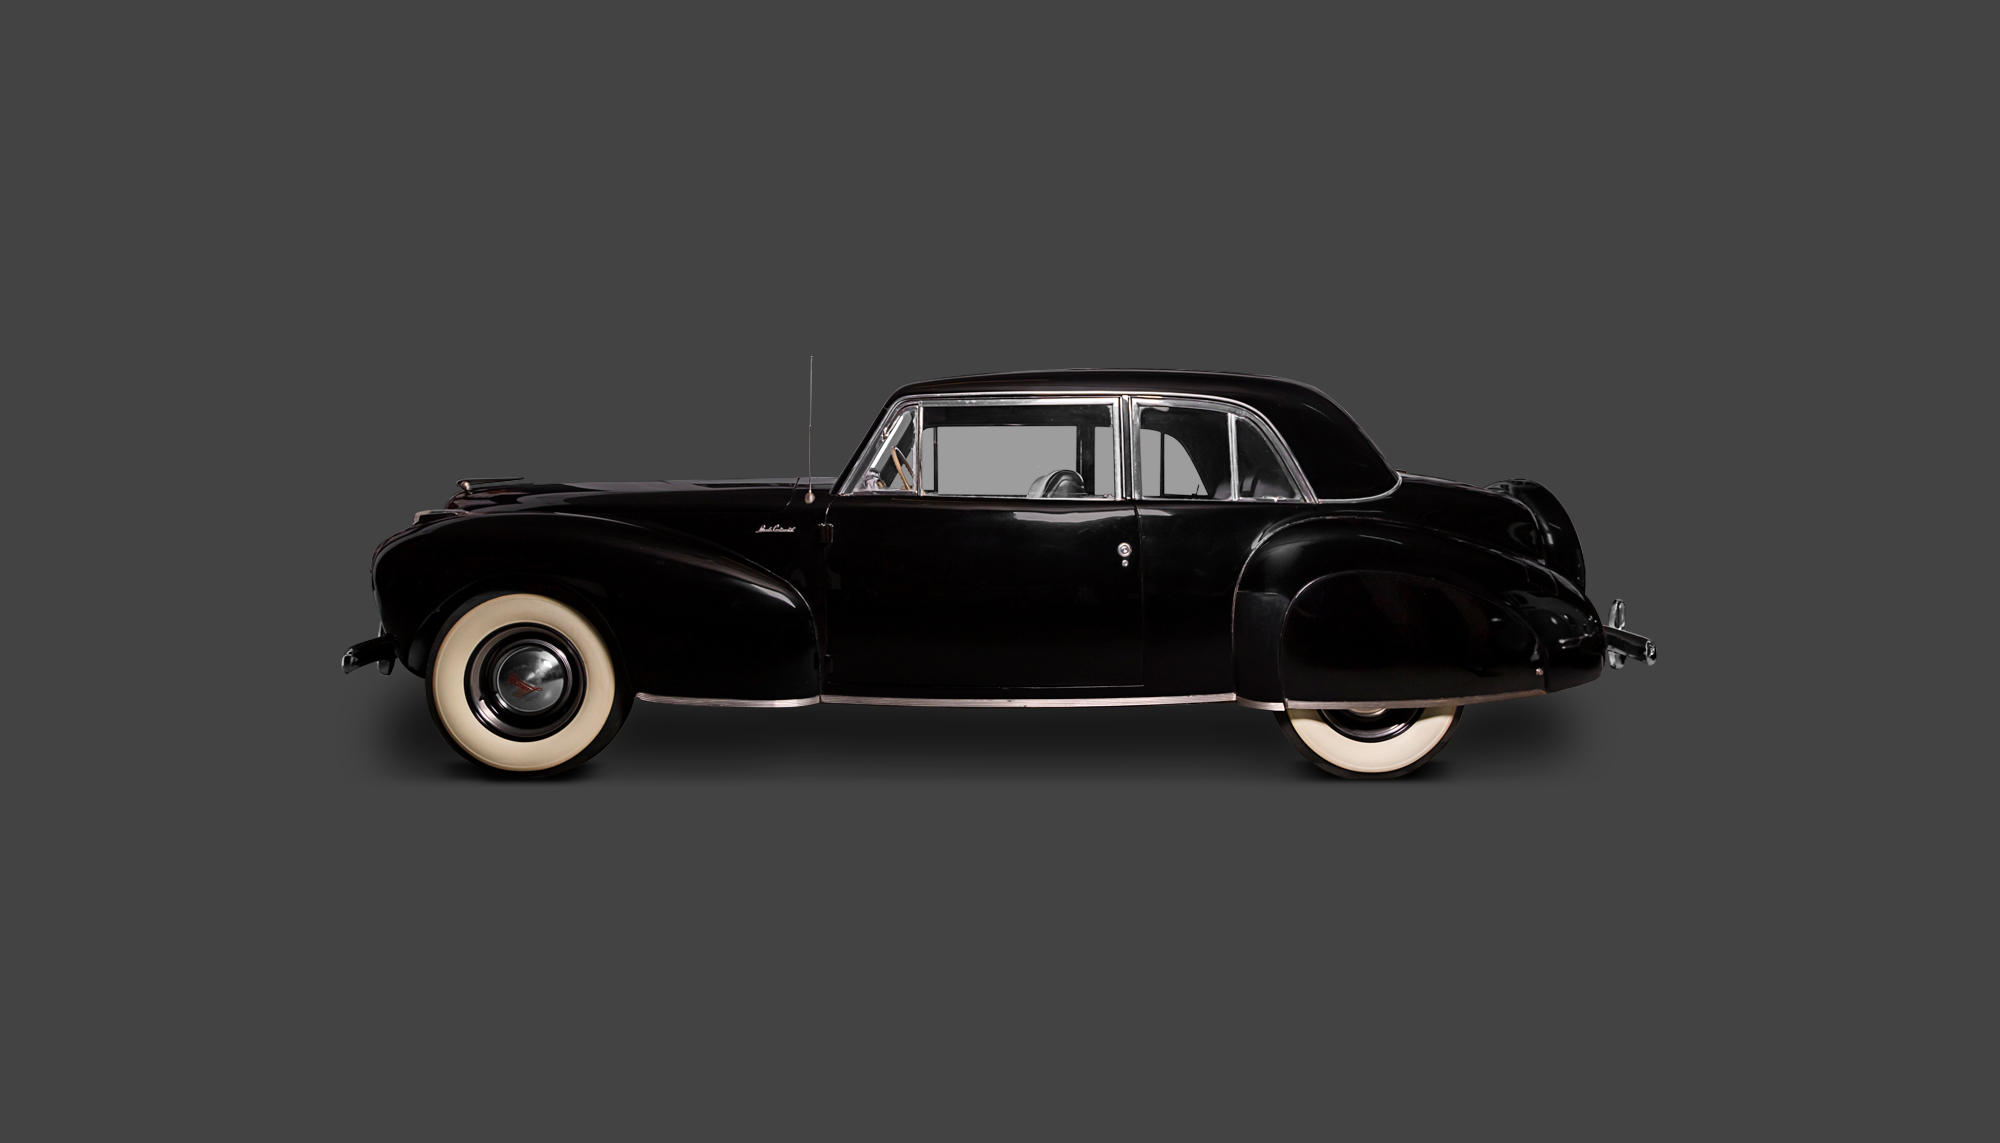 Bekijk Lincoln Continental Coupe in het Louwman Museum